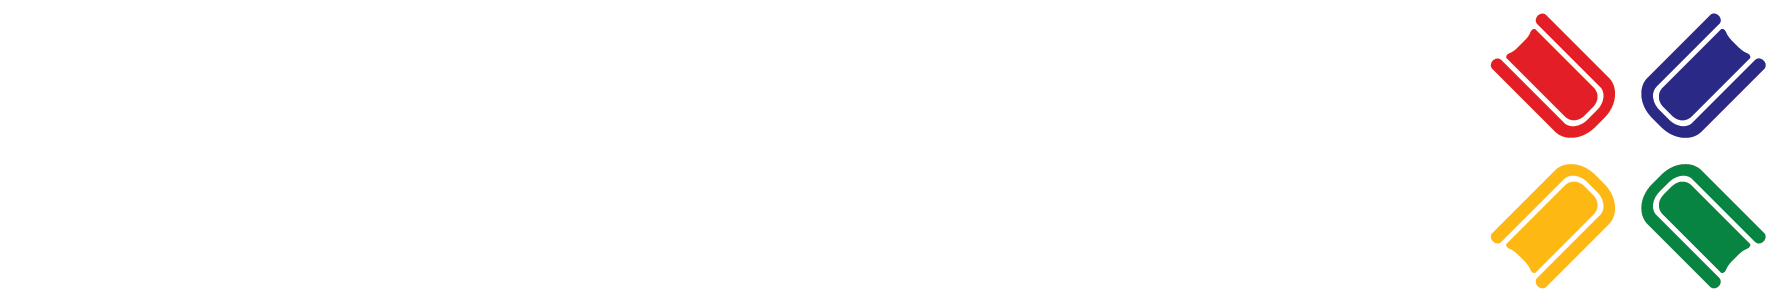 Eko Excel